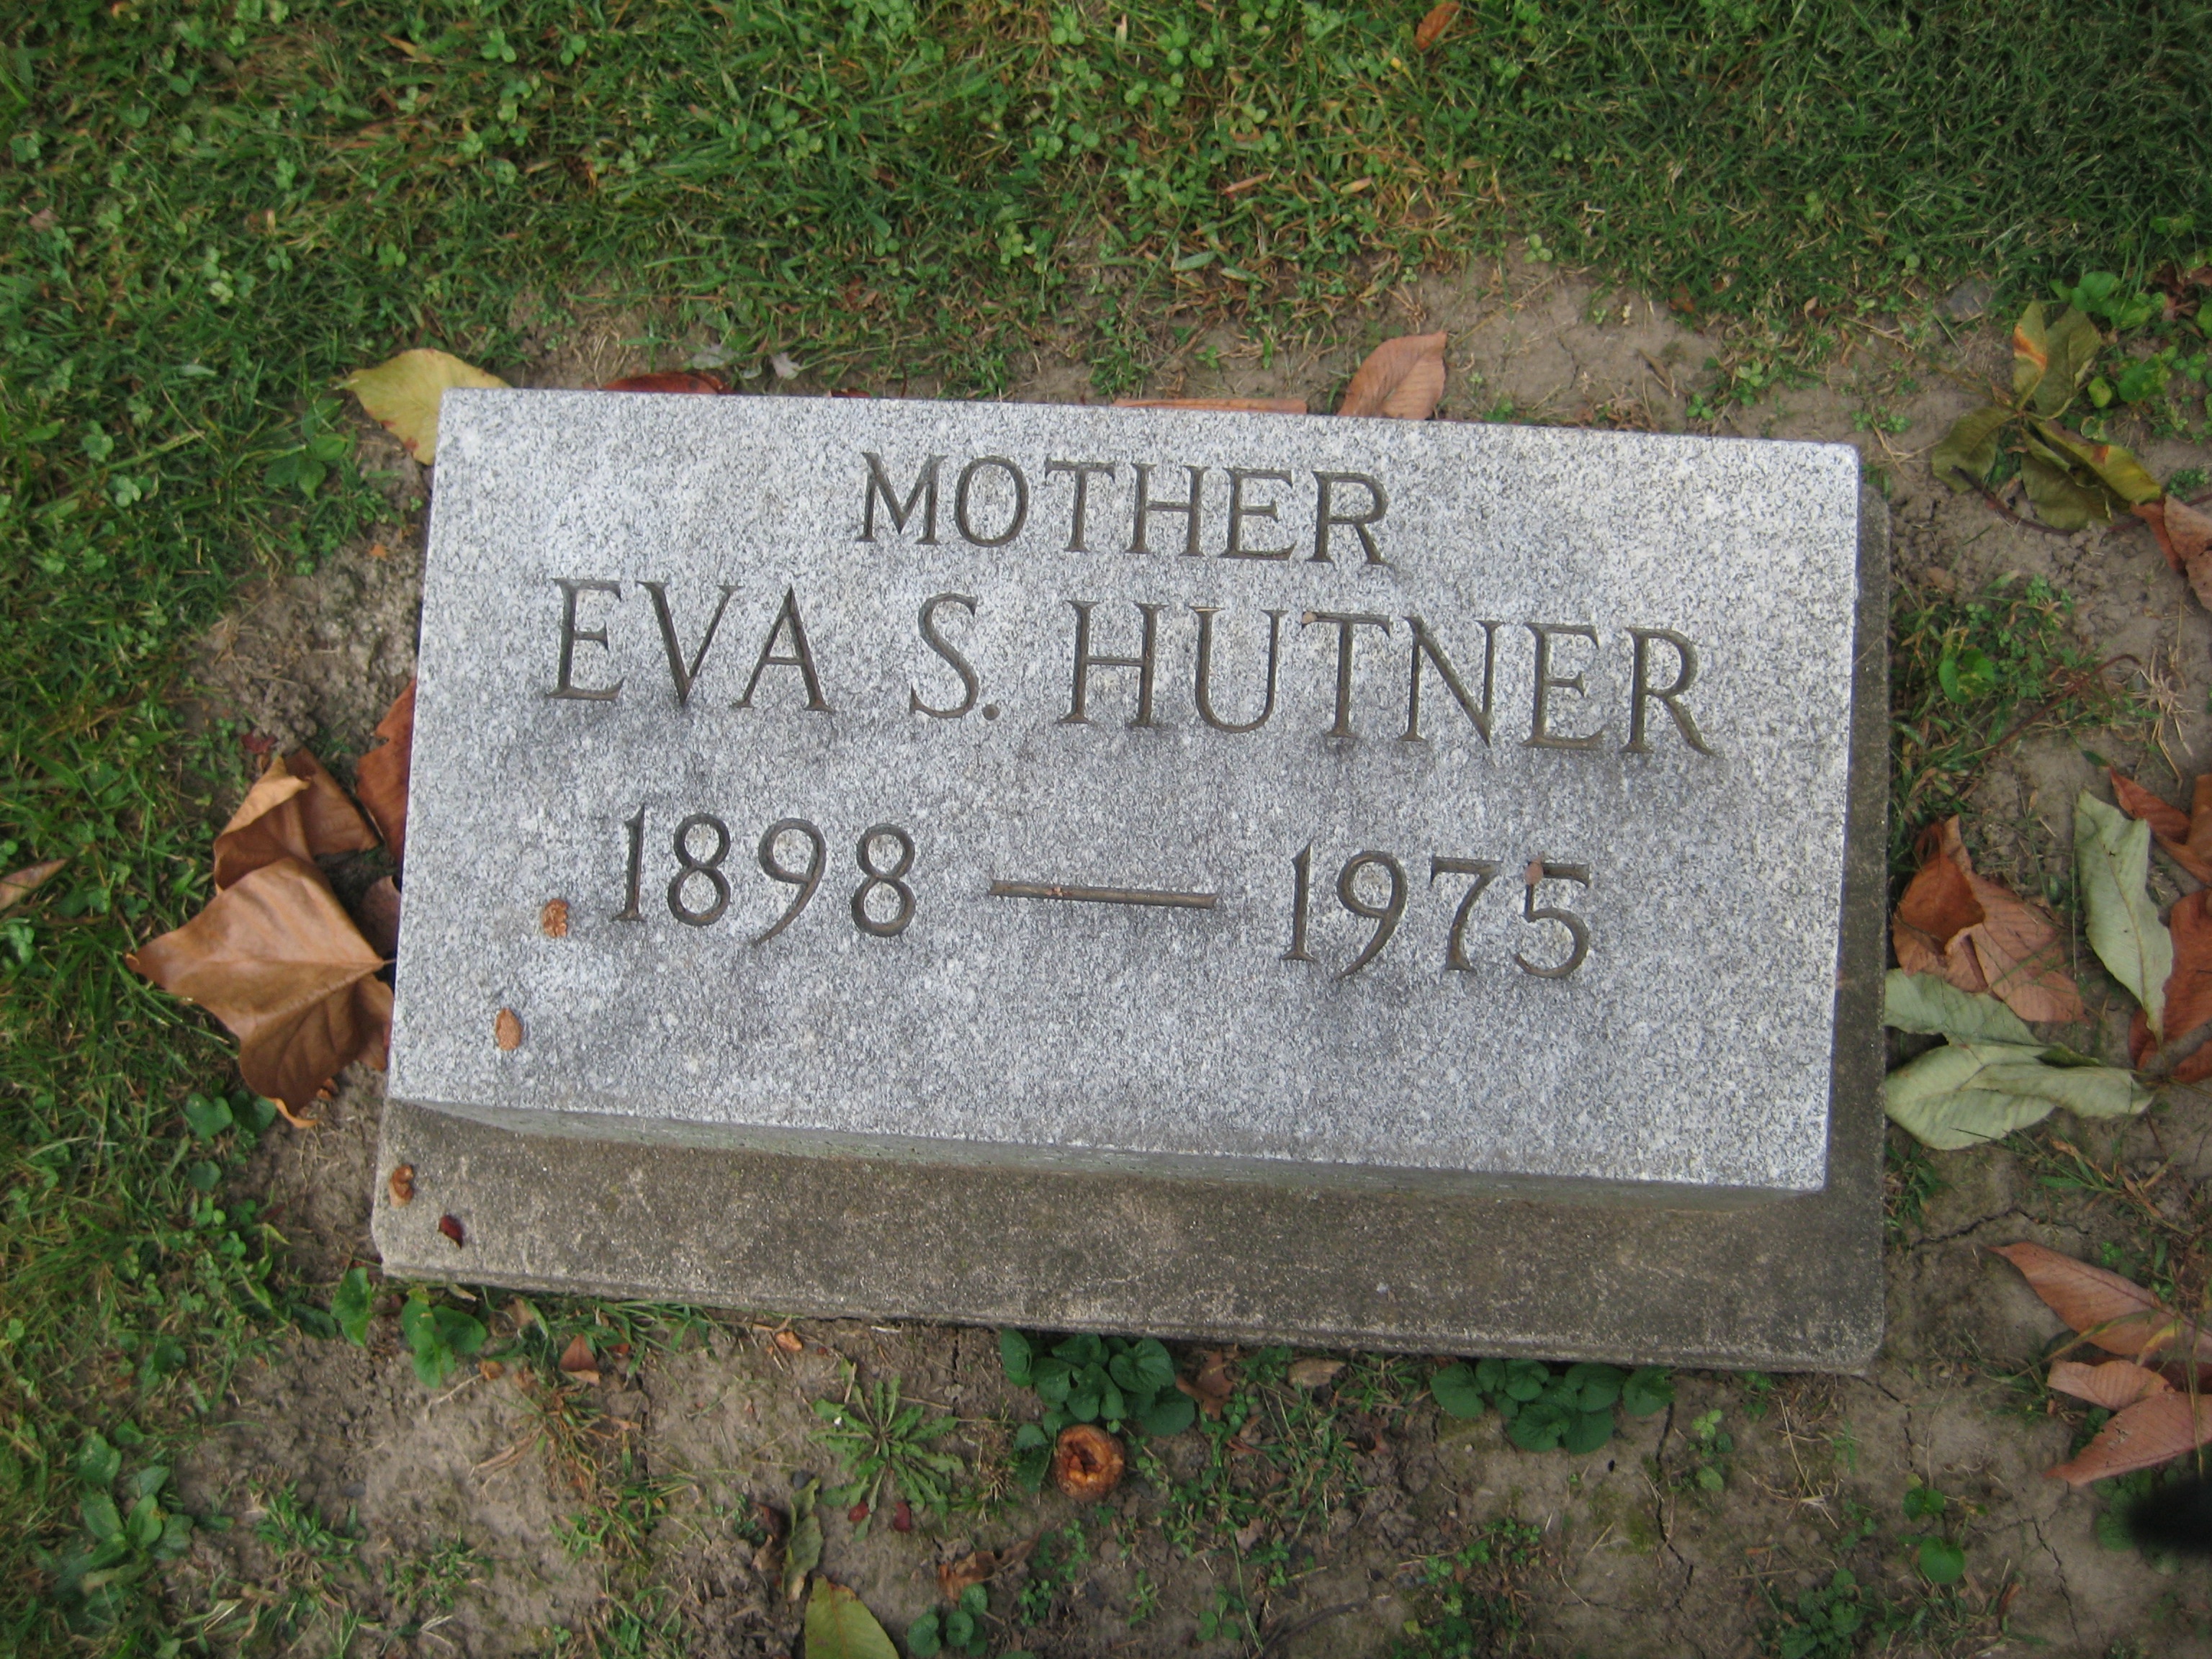 Hutner, Eva